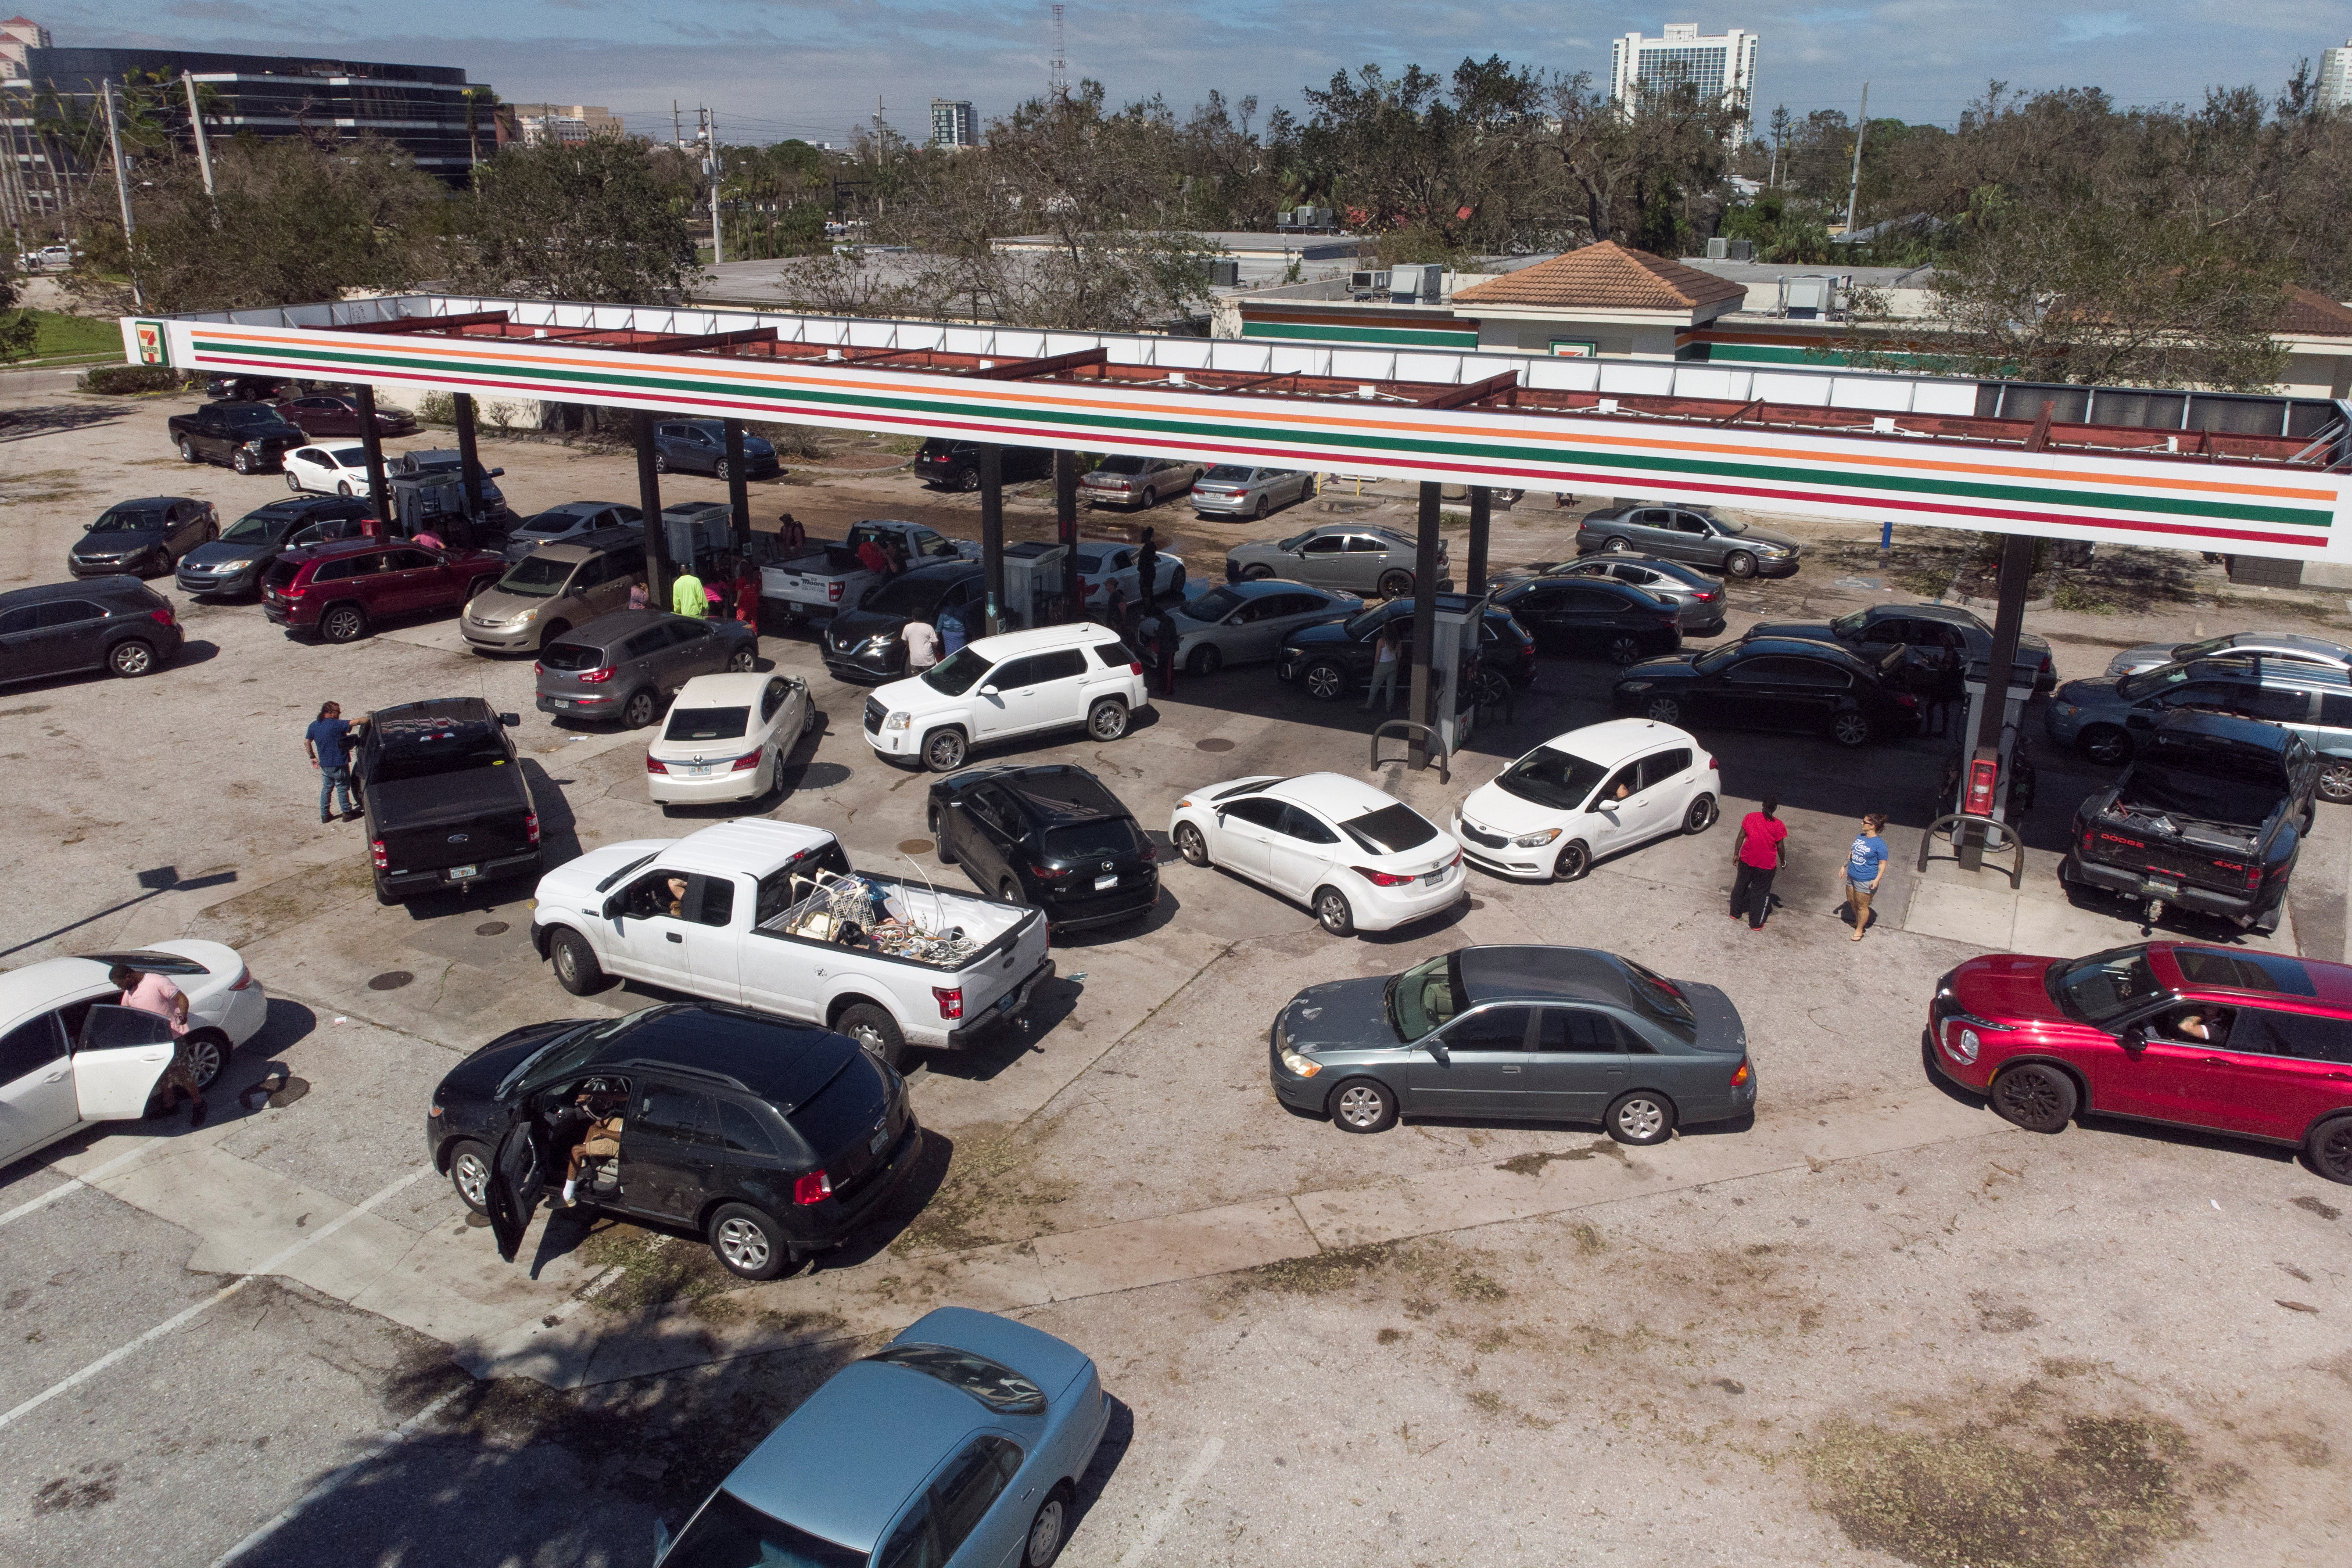 Los automovilistas hacen cola en una gasolinera después de que el huracán Ian causara una destrucción generalizada, en Fort Myers, Florida, el 29 de septiembre de 2022. (REUTERS/Marco Bello)